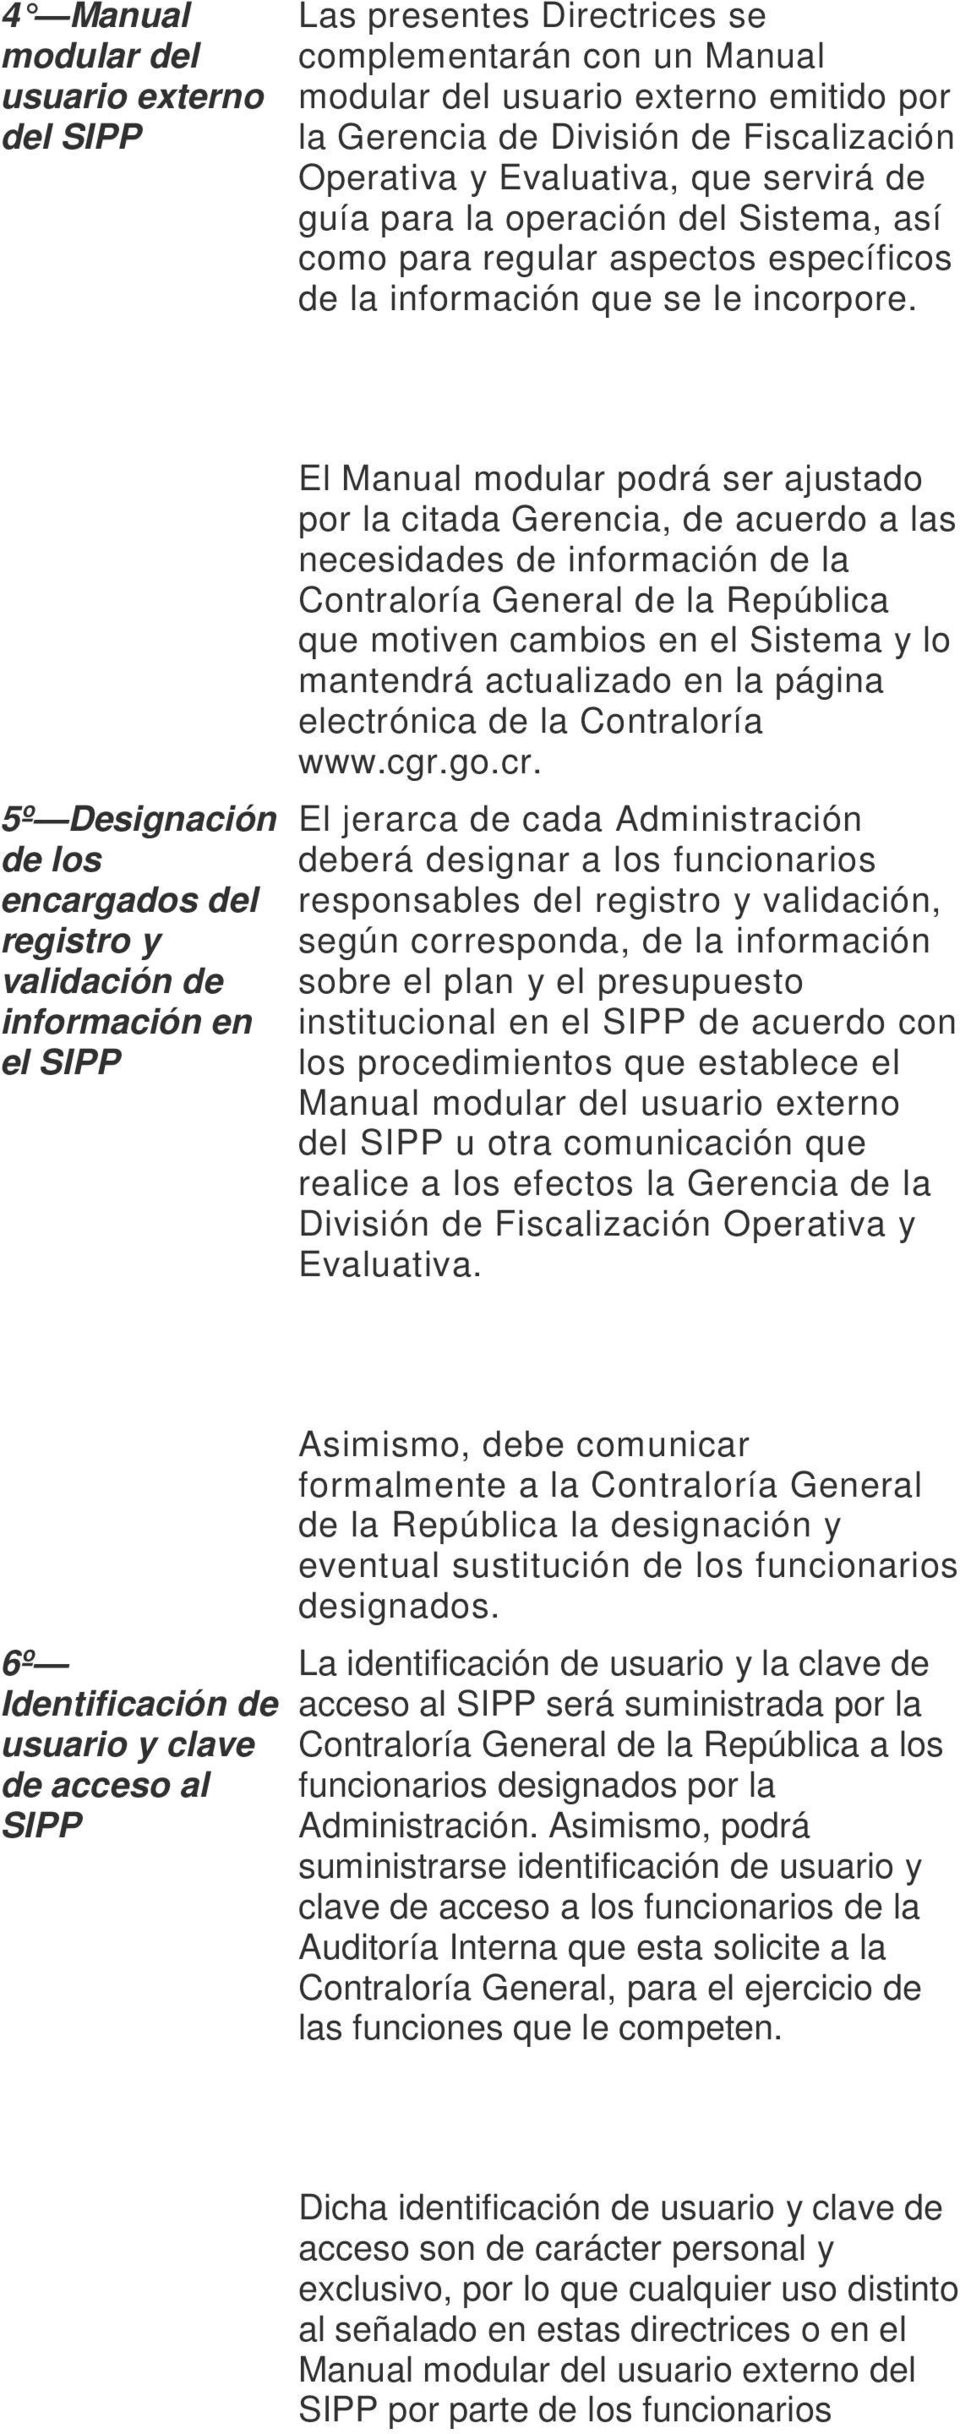 5º Designación de los encargados del registro y validación de información en el SIPP El Manual modular podrá ser ajustado por la citada Gerencia, de acuerdo a las necesidades de información de la